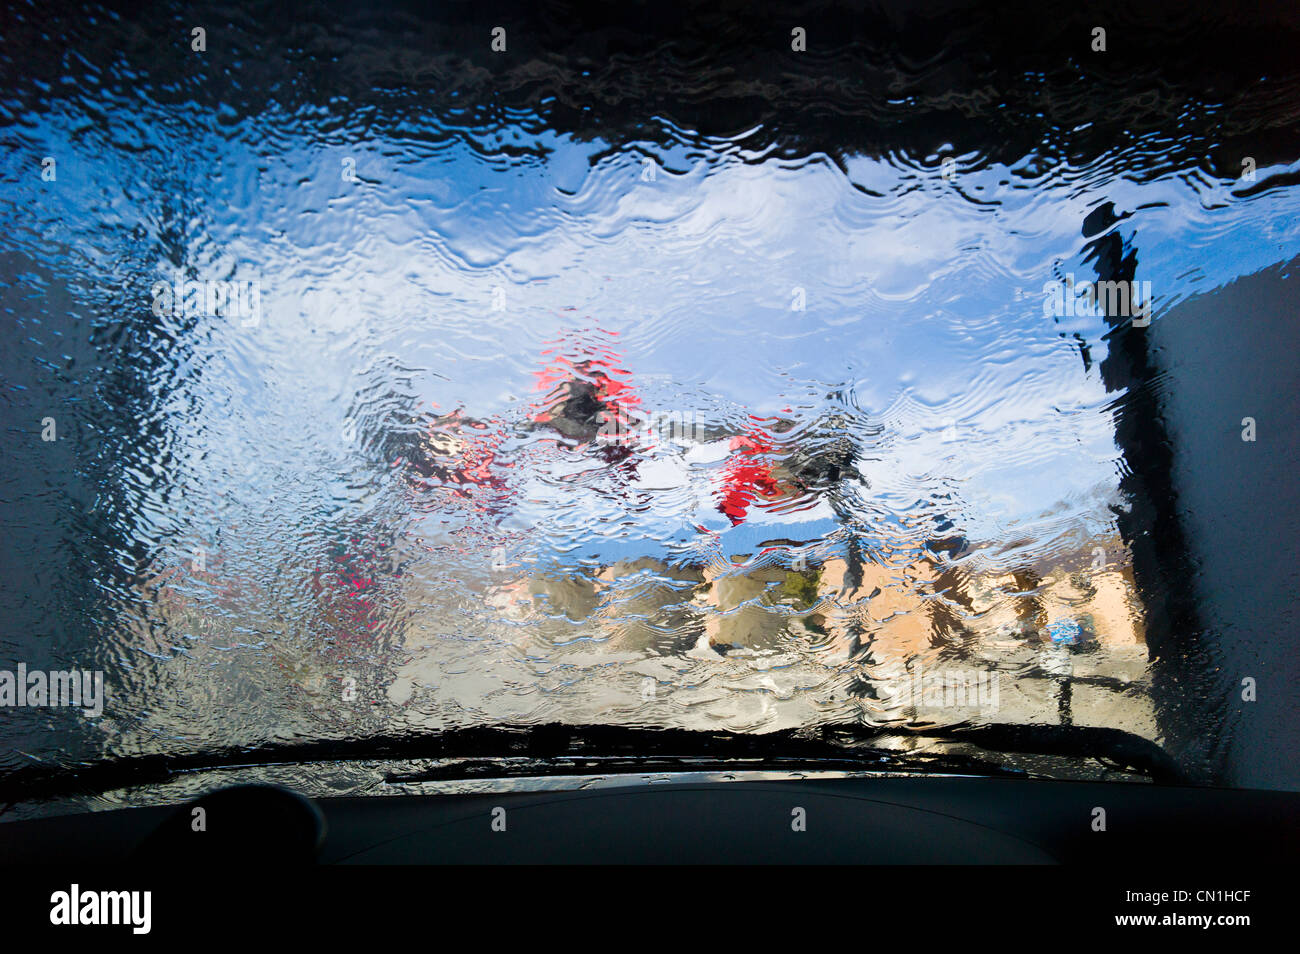 Blick durch die Windschutzscheibe eines Autos in einer automatischen Waschanlage. Stockfoto